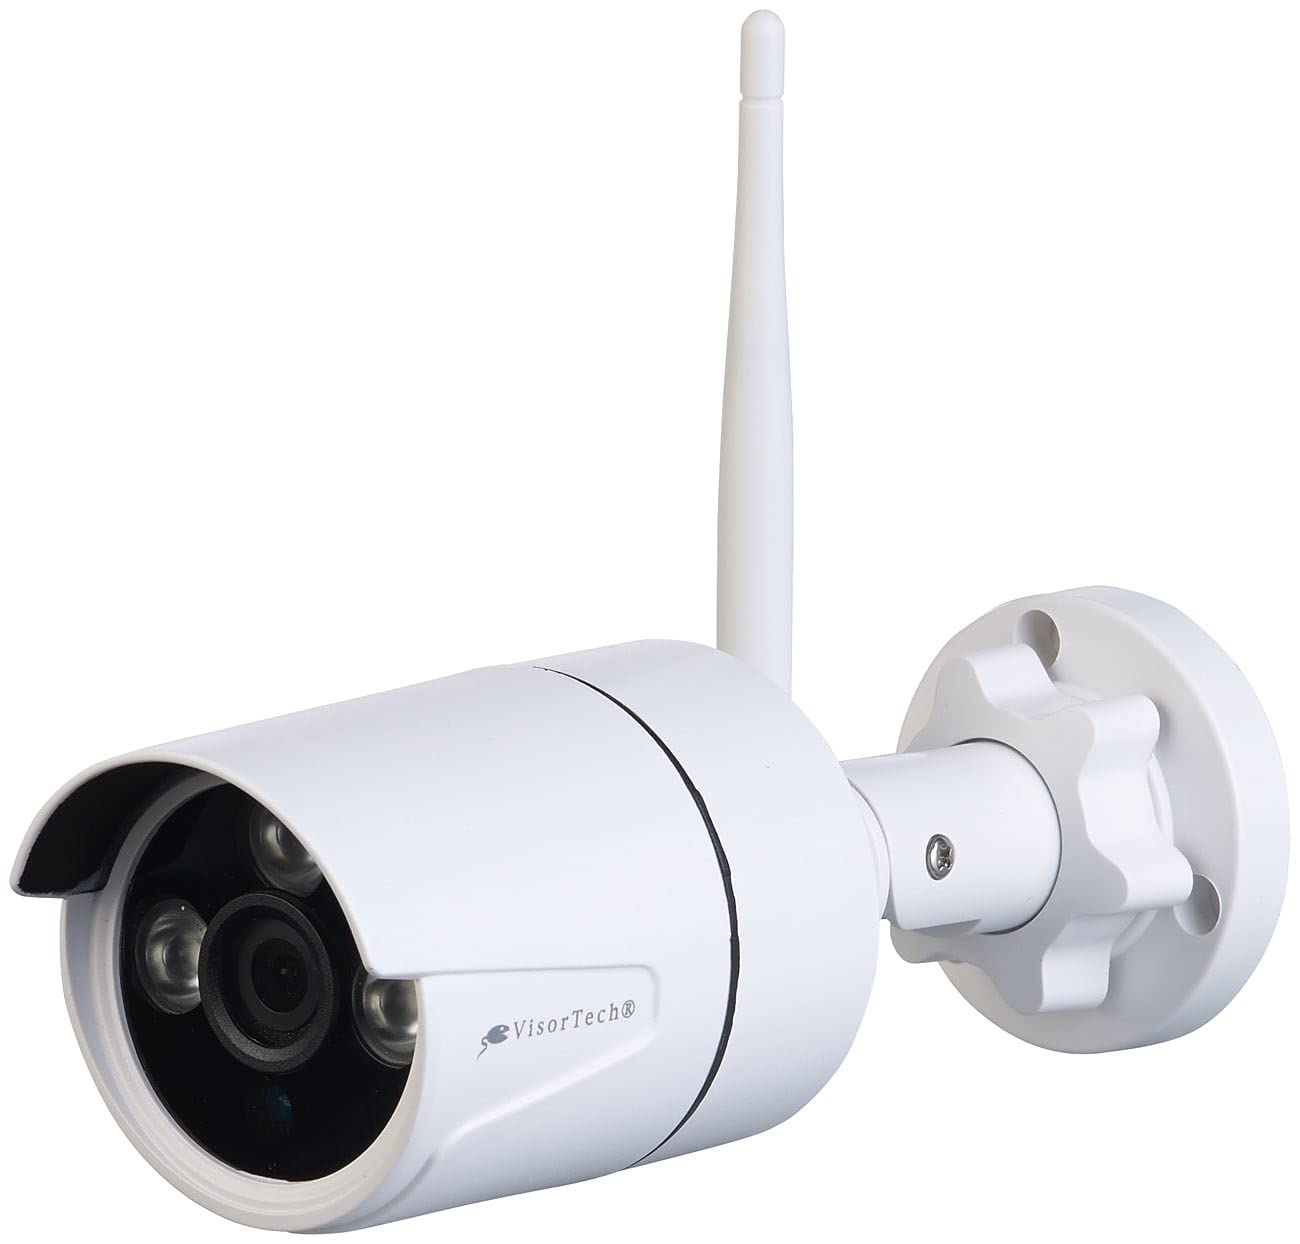 VisorTech Zubehör zu Überwachungscameras: Funk-IP-Kamera für Überwachungssystem DSC-850.app/750.app V2/1920.app (Ueberwachungskamera-Set, Video Überwachungskamera Set, Alarm Bewegungsmelder)